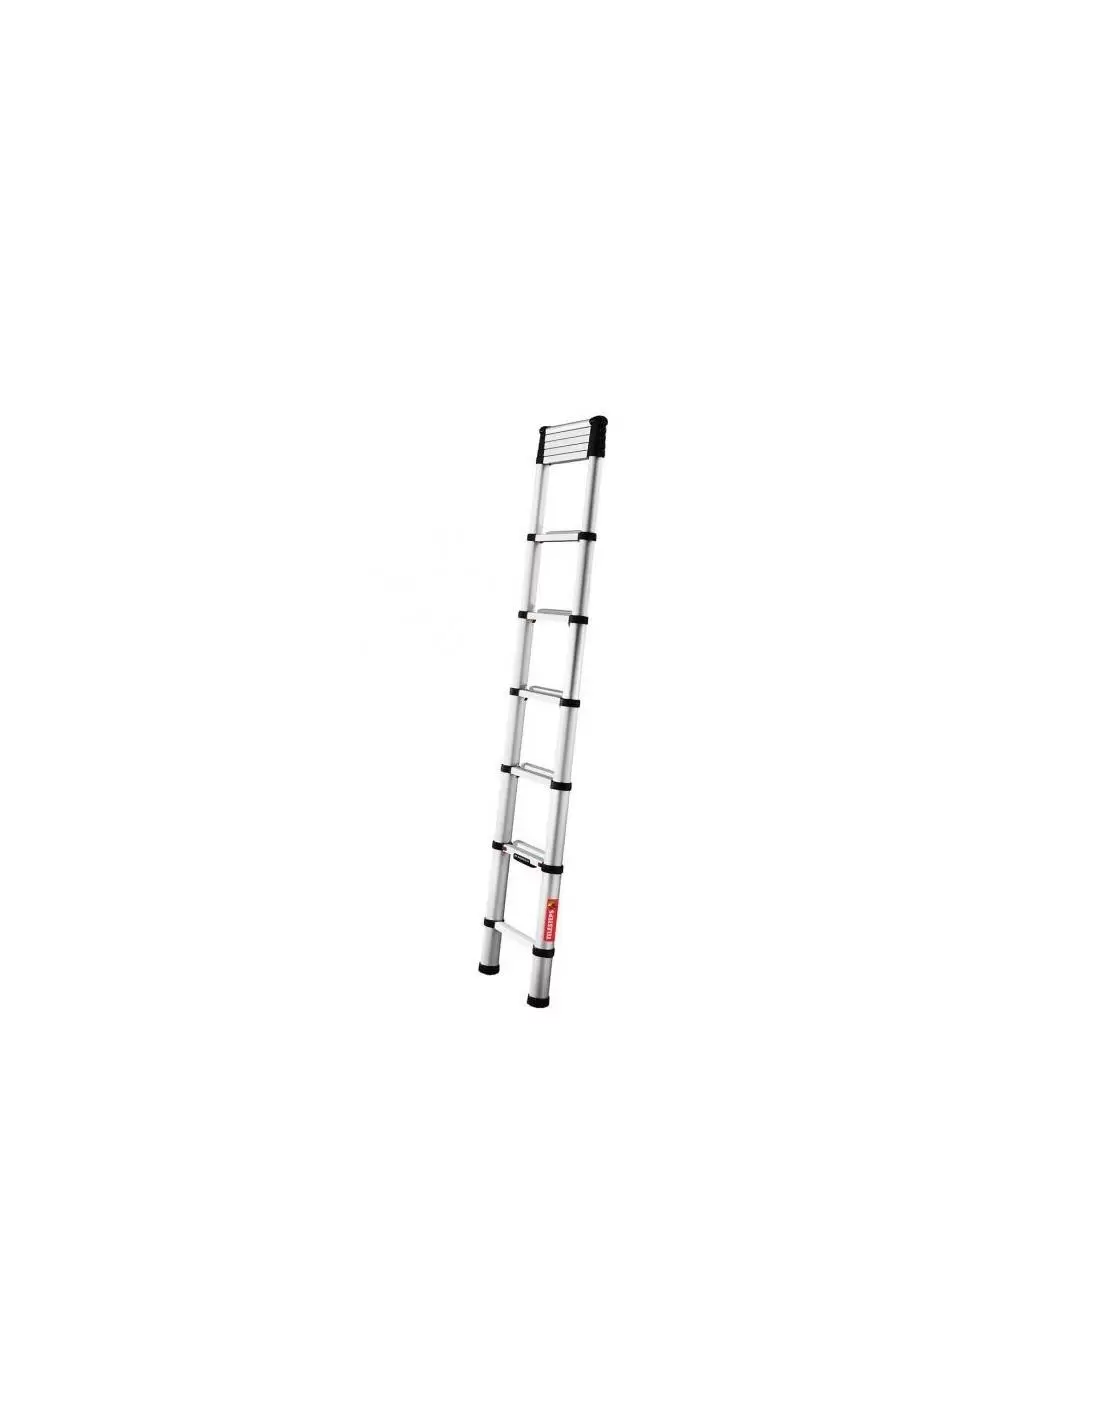 Échelle télescopique Telesteps Eco Line 3,0 m - Ladder-Steiger